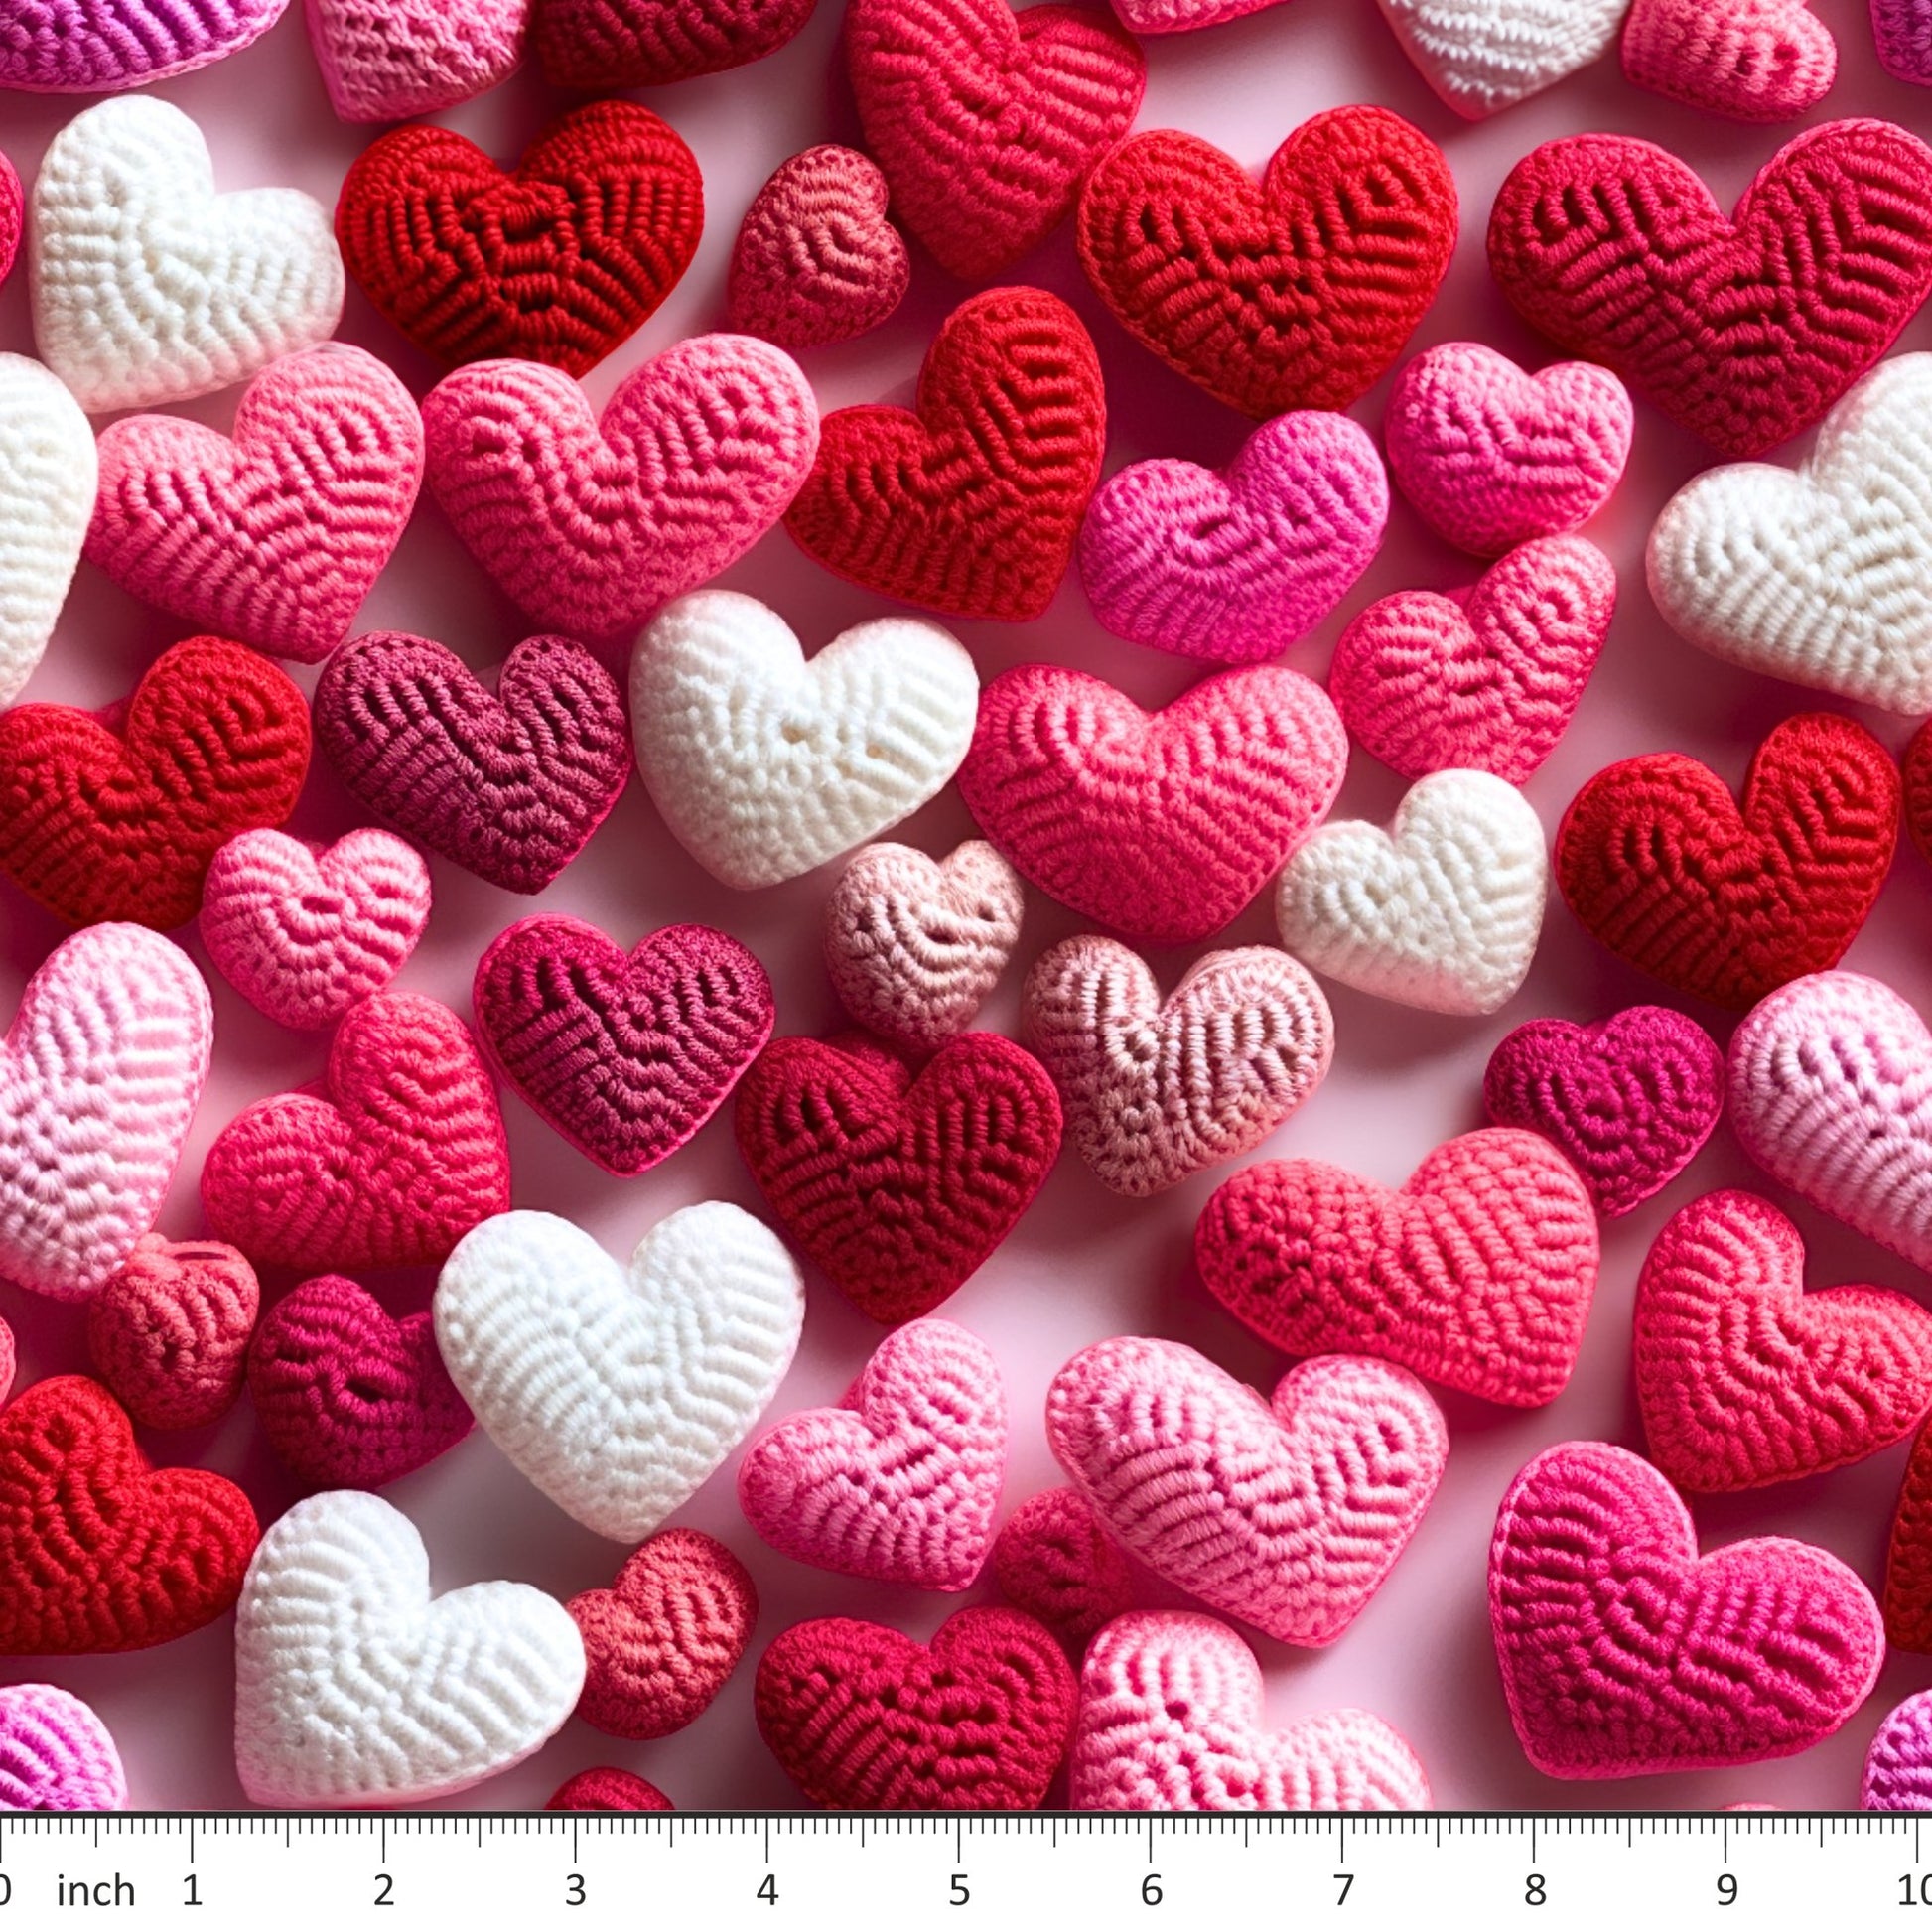 Bonnie's Boujee Designs - 3D Look Yarn Hearts - Little Rhody Sewing Co.